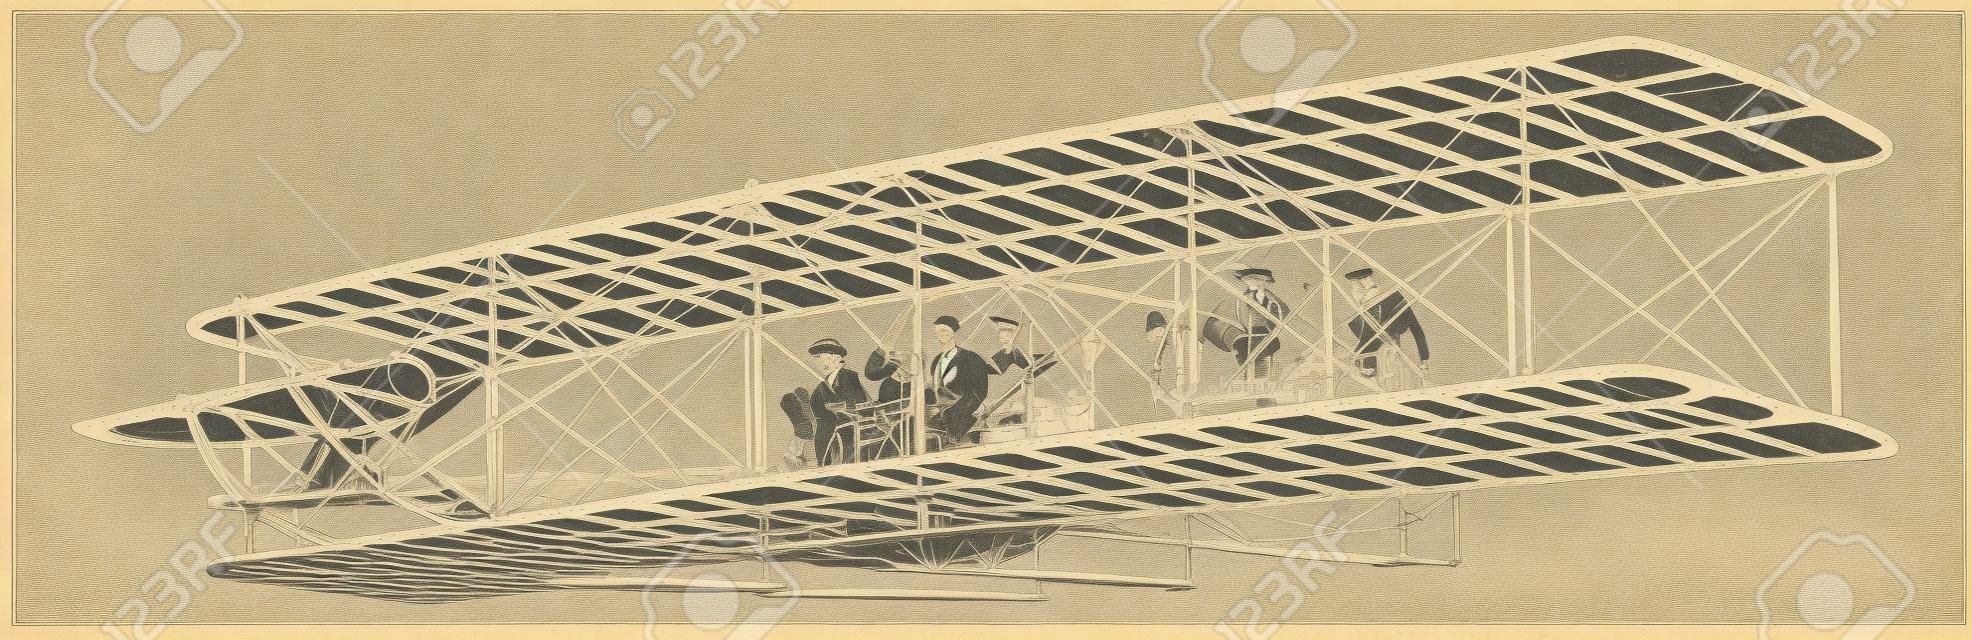 Wright Brothers Aeroplane experiência de voo mais bem sucedida que em 1908 fez muitas ascensões bem sucedidas, desenho de linha vintage ou ilustração de gravura.